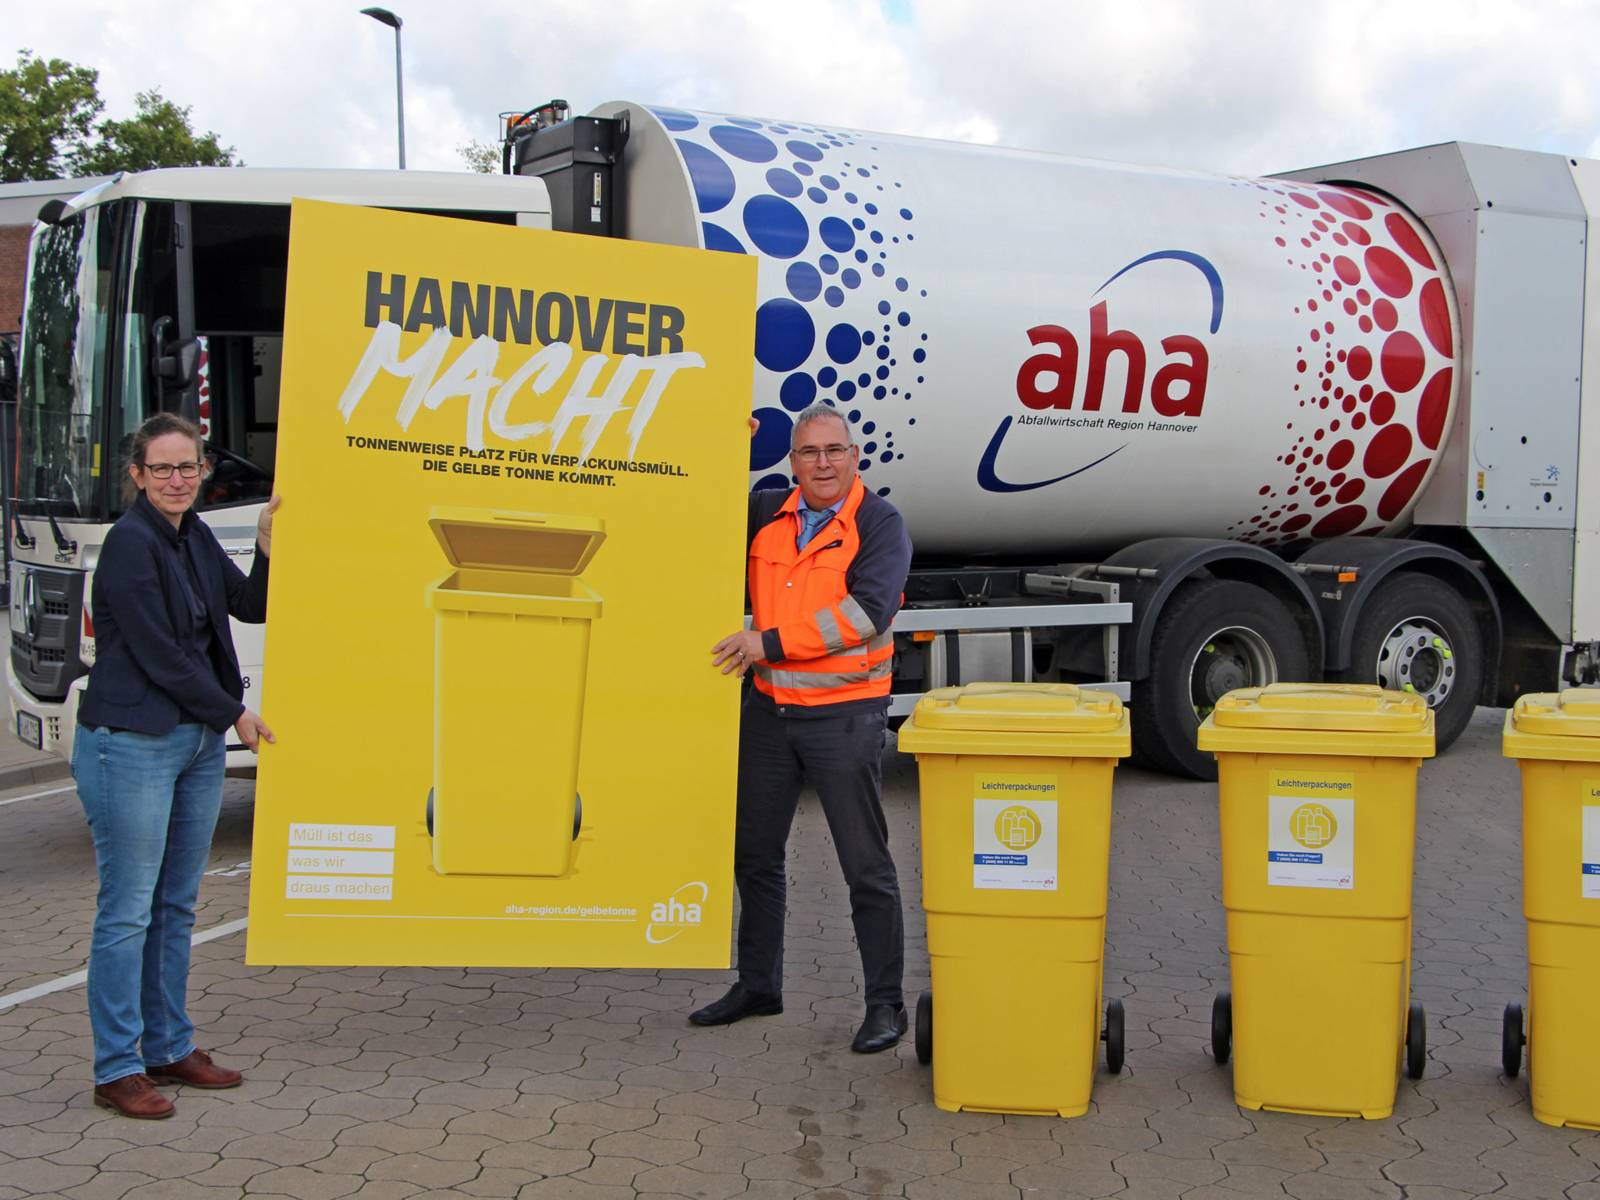 Eine Frau und ein Mann vor einem Müllauto stehend halten ein großes gelbes Plakat mit der Aufschrift "Hannover macht" in den Händen, daneben stehen drei gelbe Mülltonnen mit der Aufschrift "Leichtverpackungen".